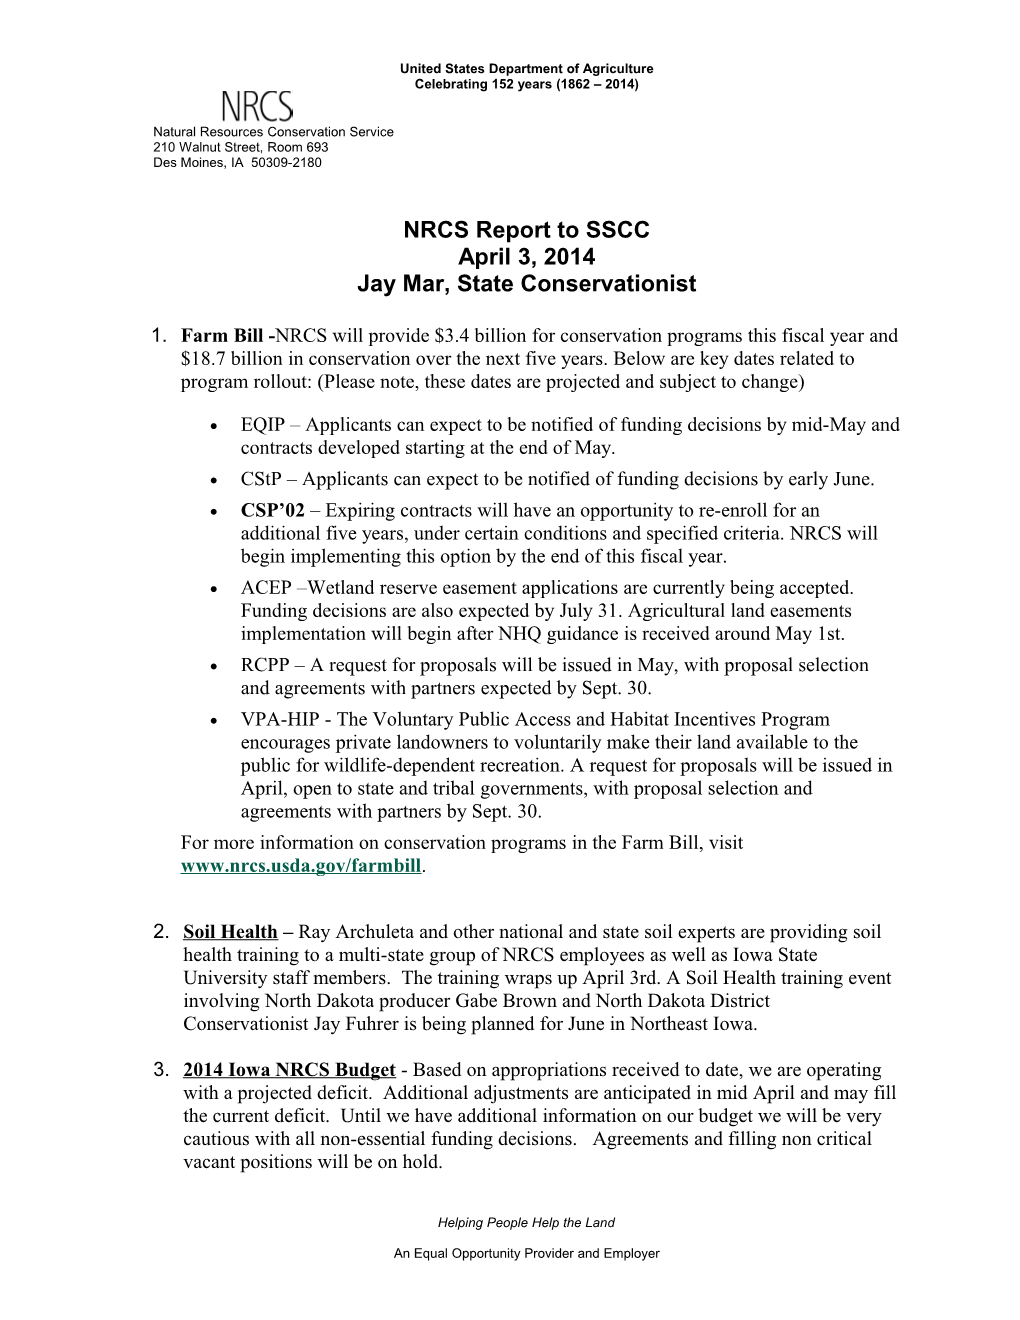 NRCS Report to SSCC